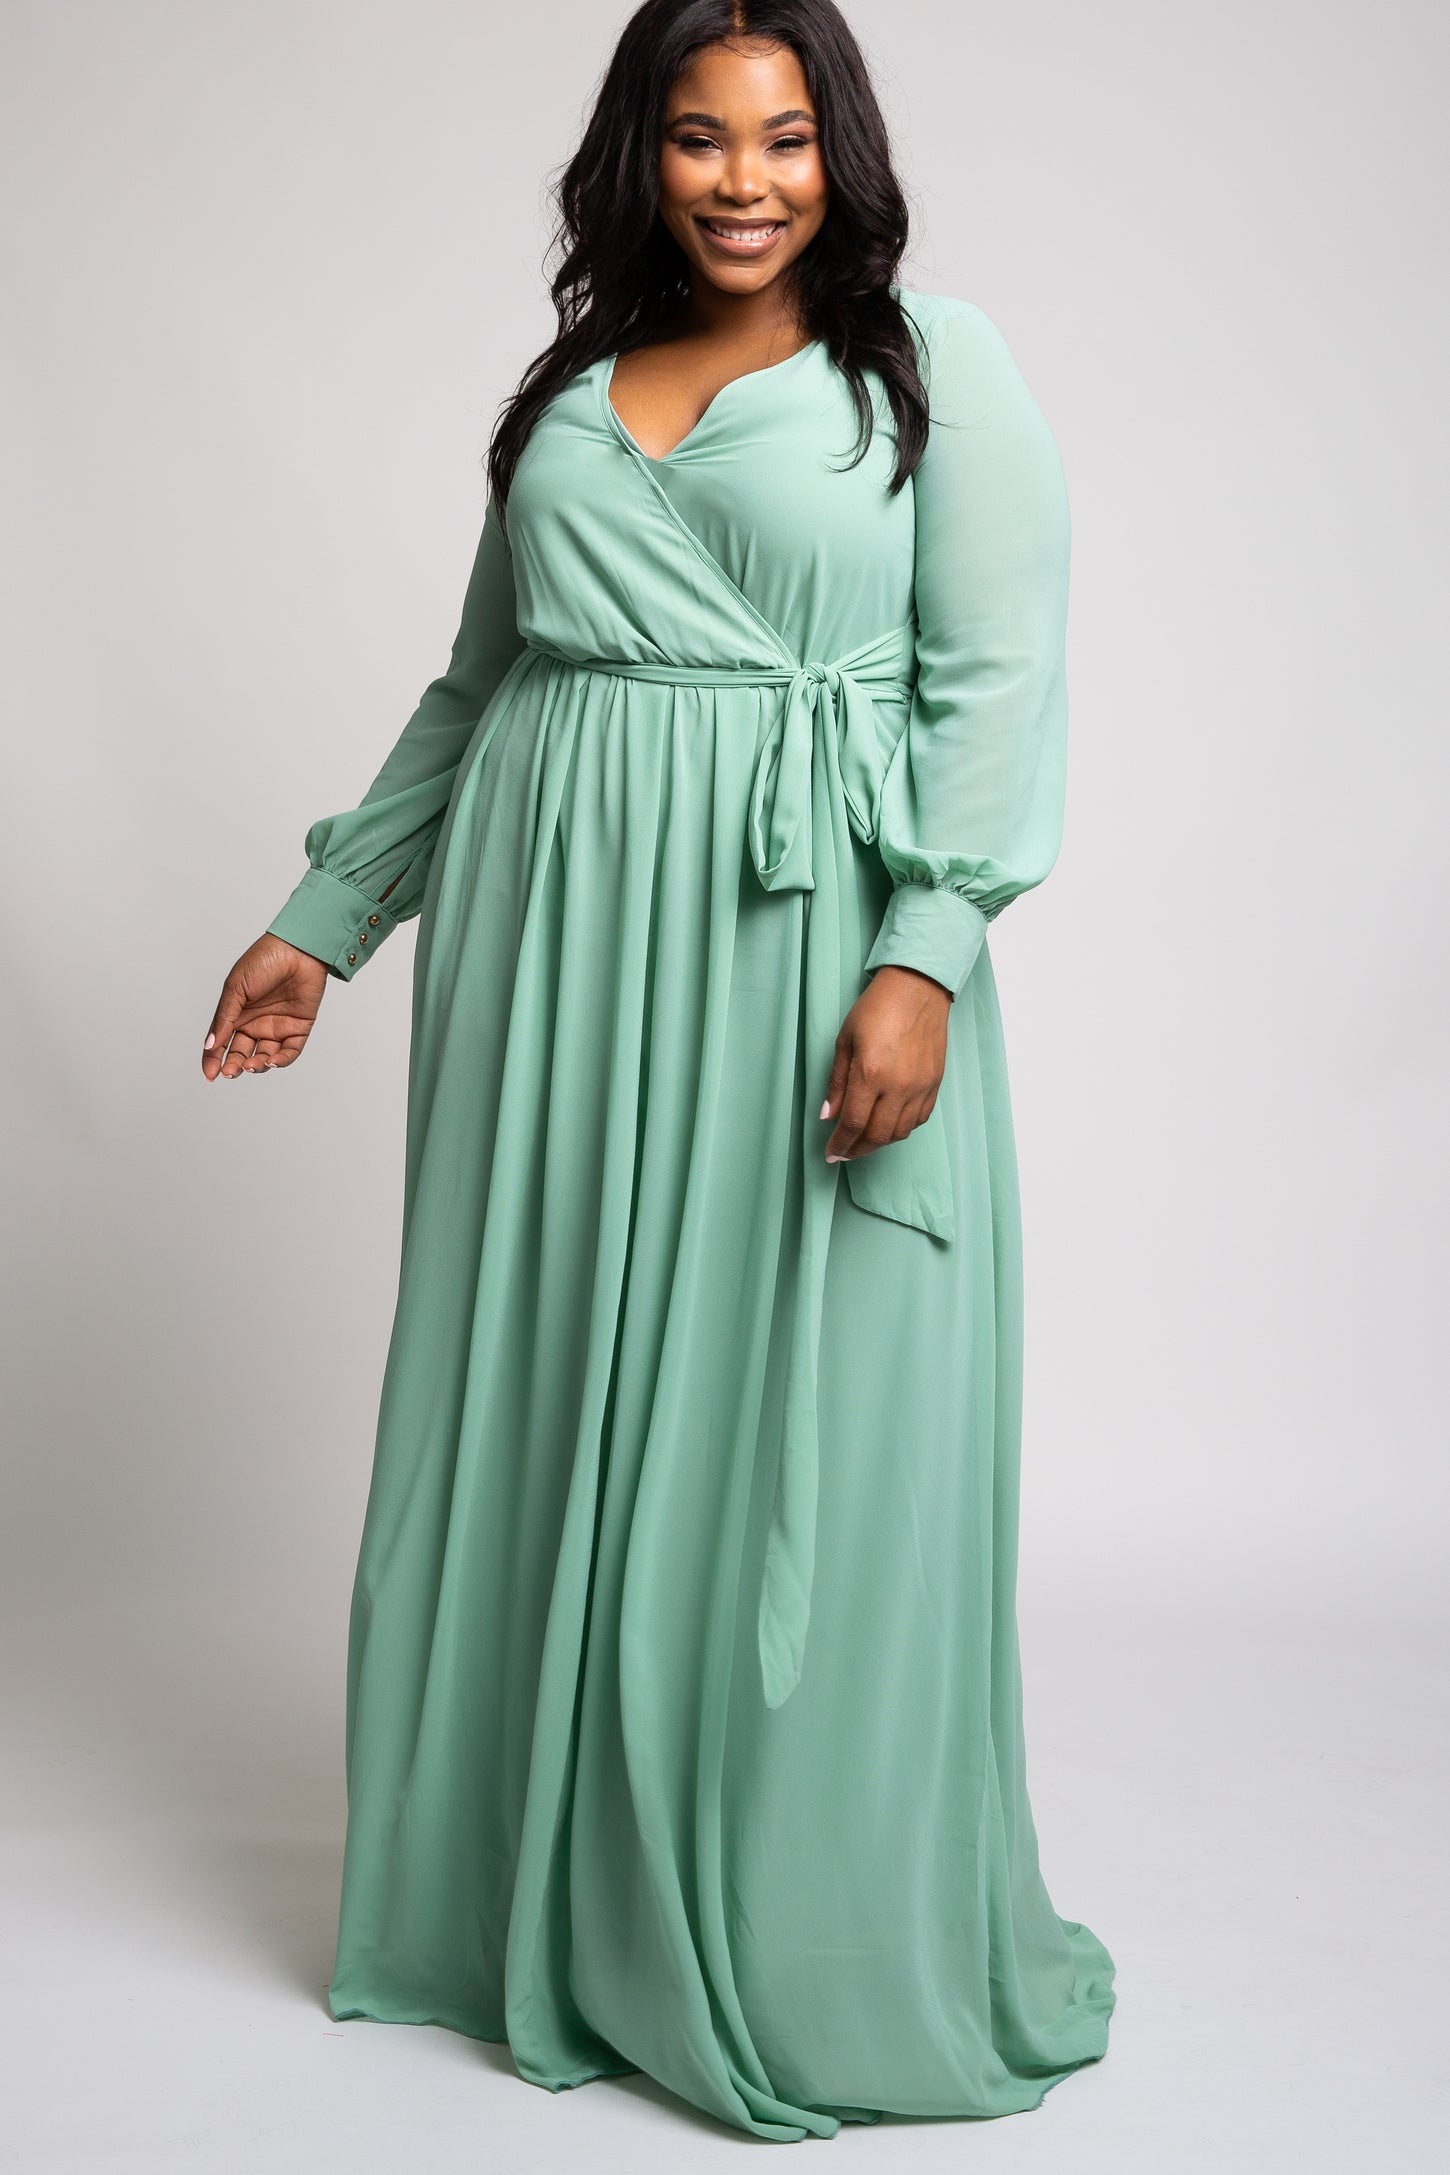 Mint Green Chiffon Maternity Plus Maxi Dress